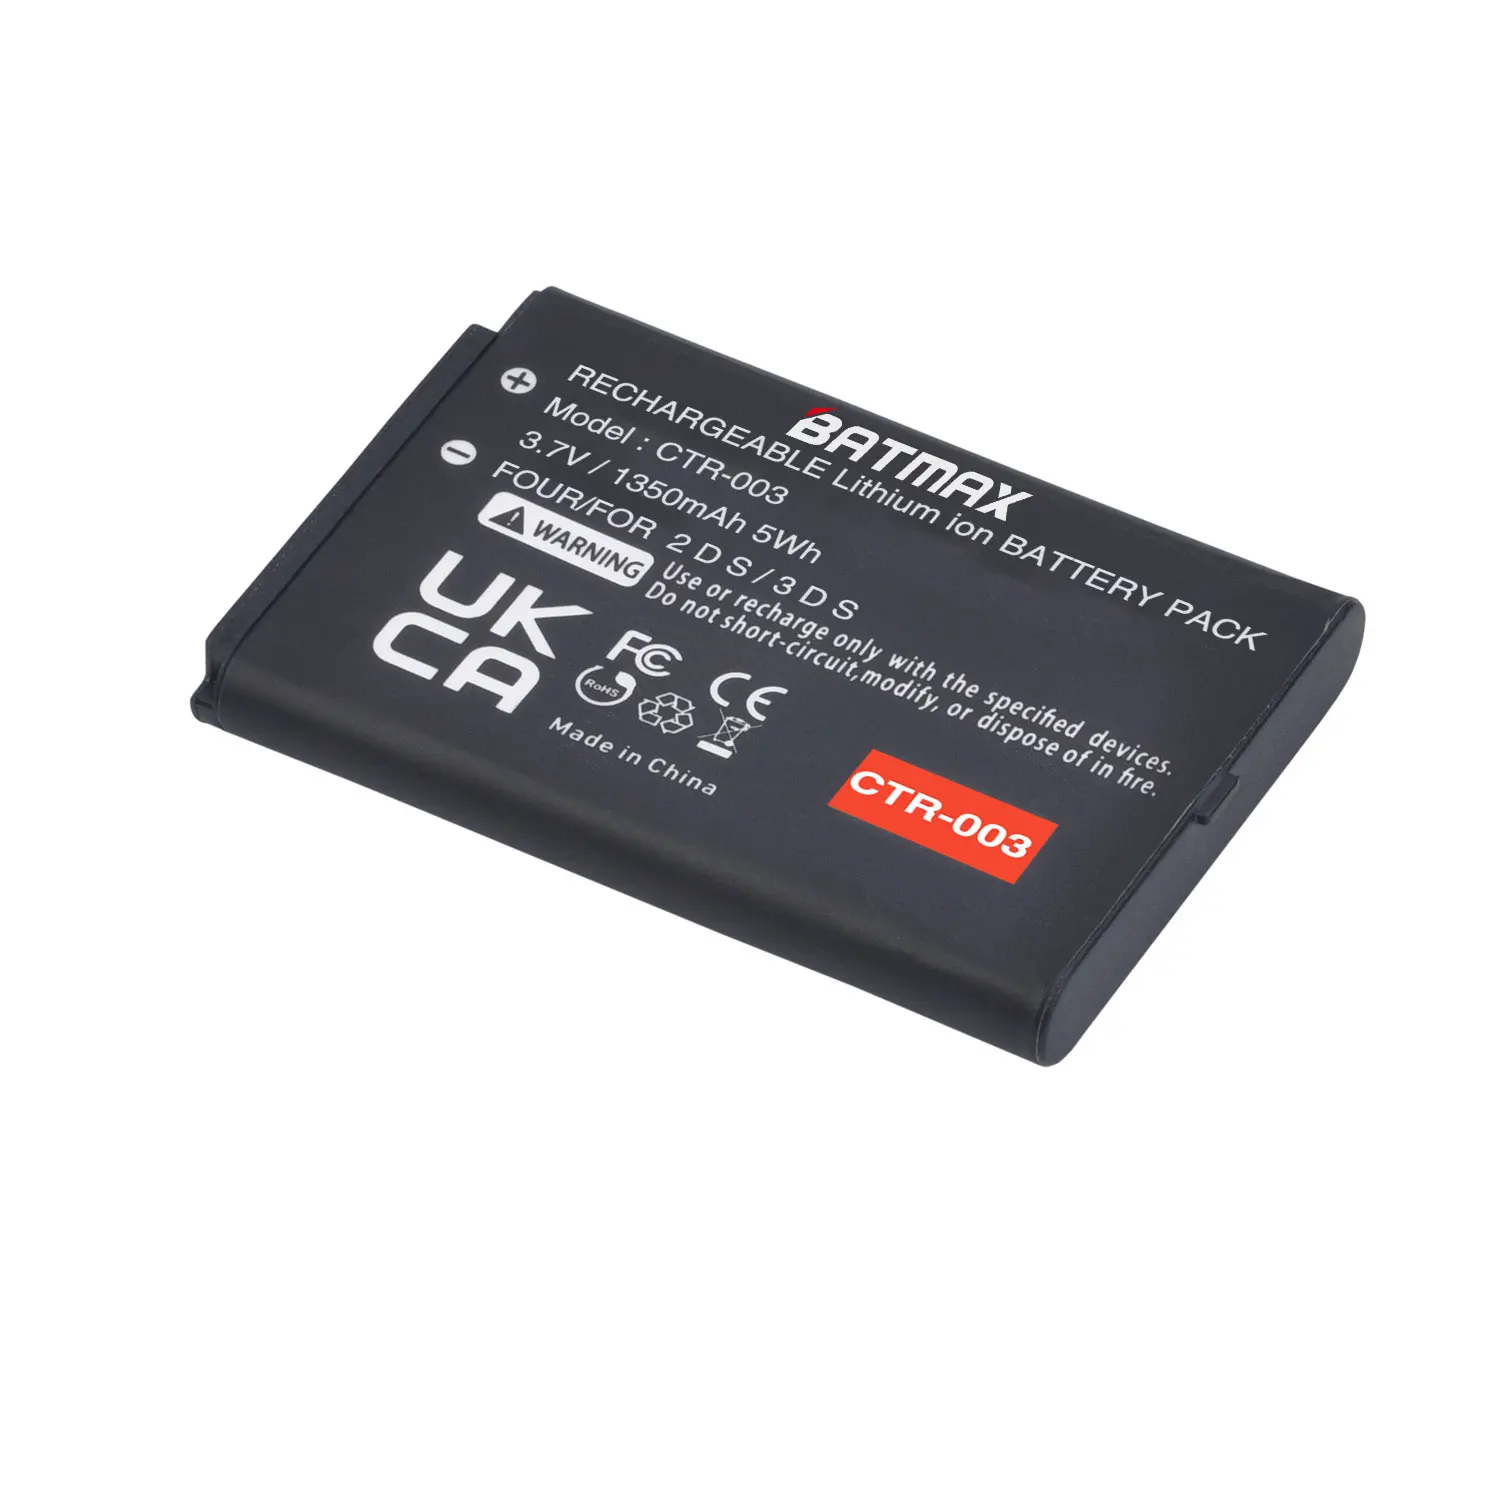 KTR-003 bateria para nintendo novos acessórios de console de jogos 3ds n3ds  - AliExpress